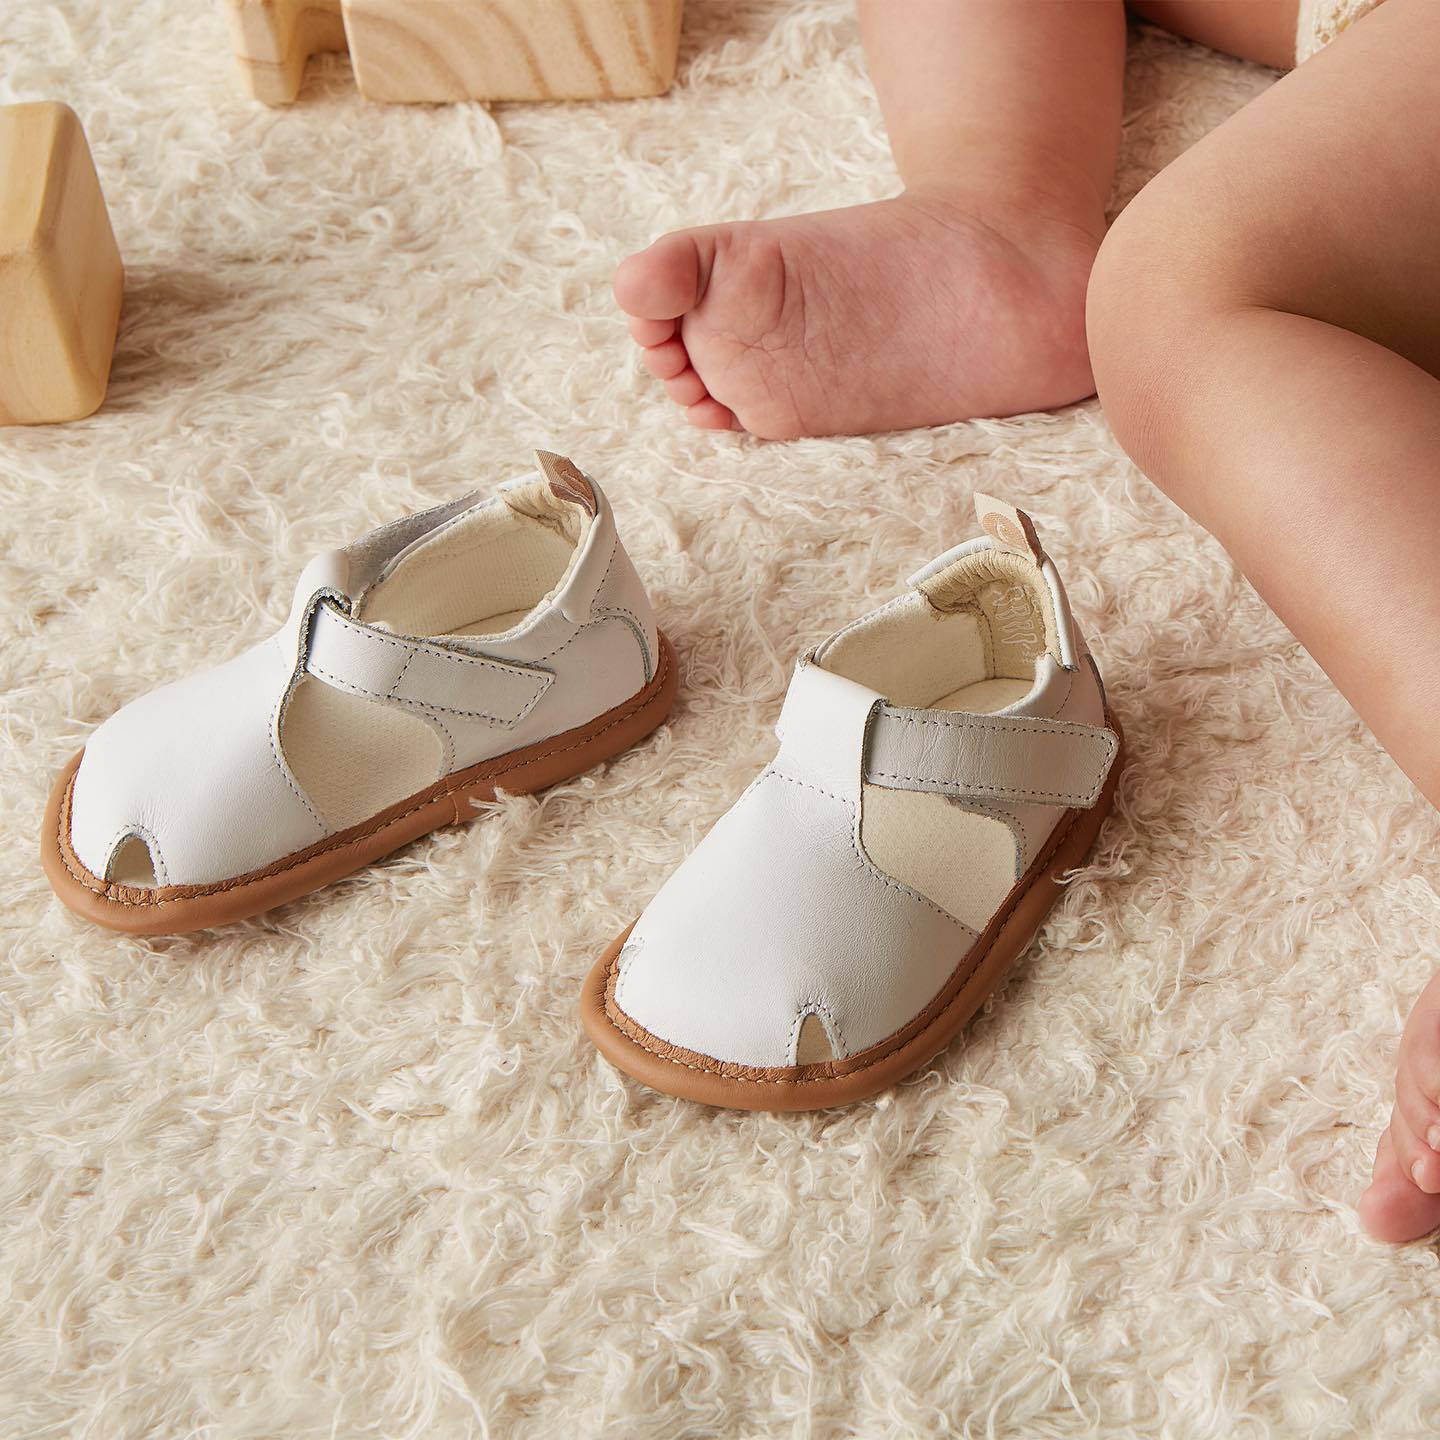 Sandales bébé enfant : c'est trop grand ?